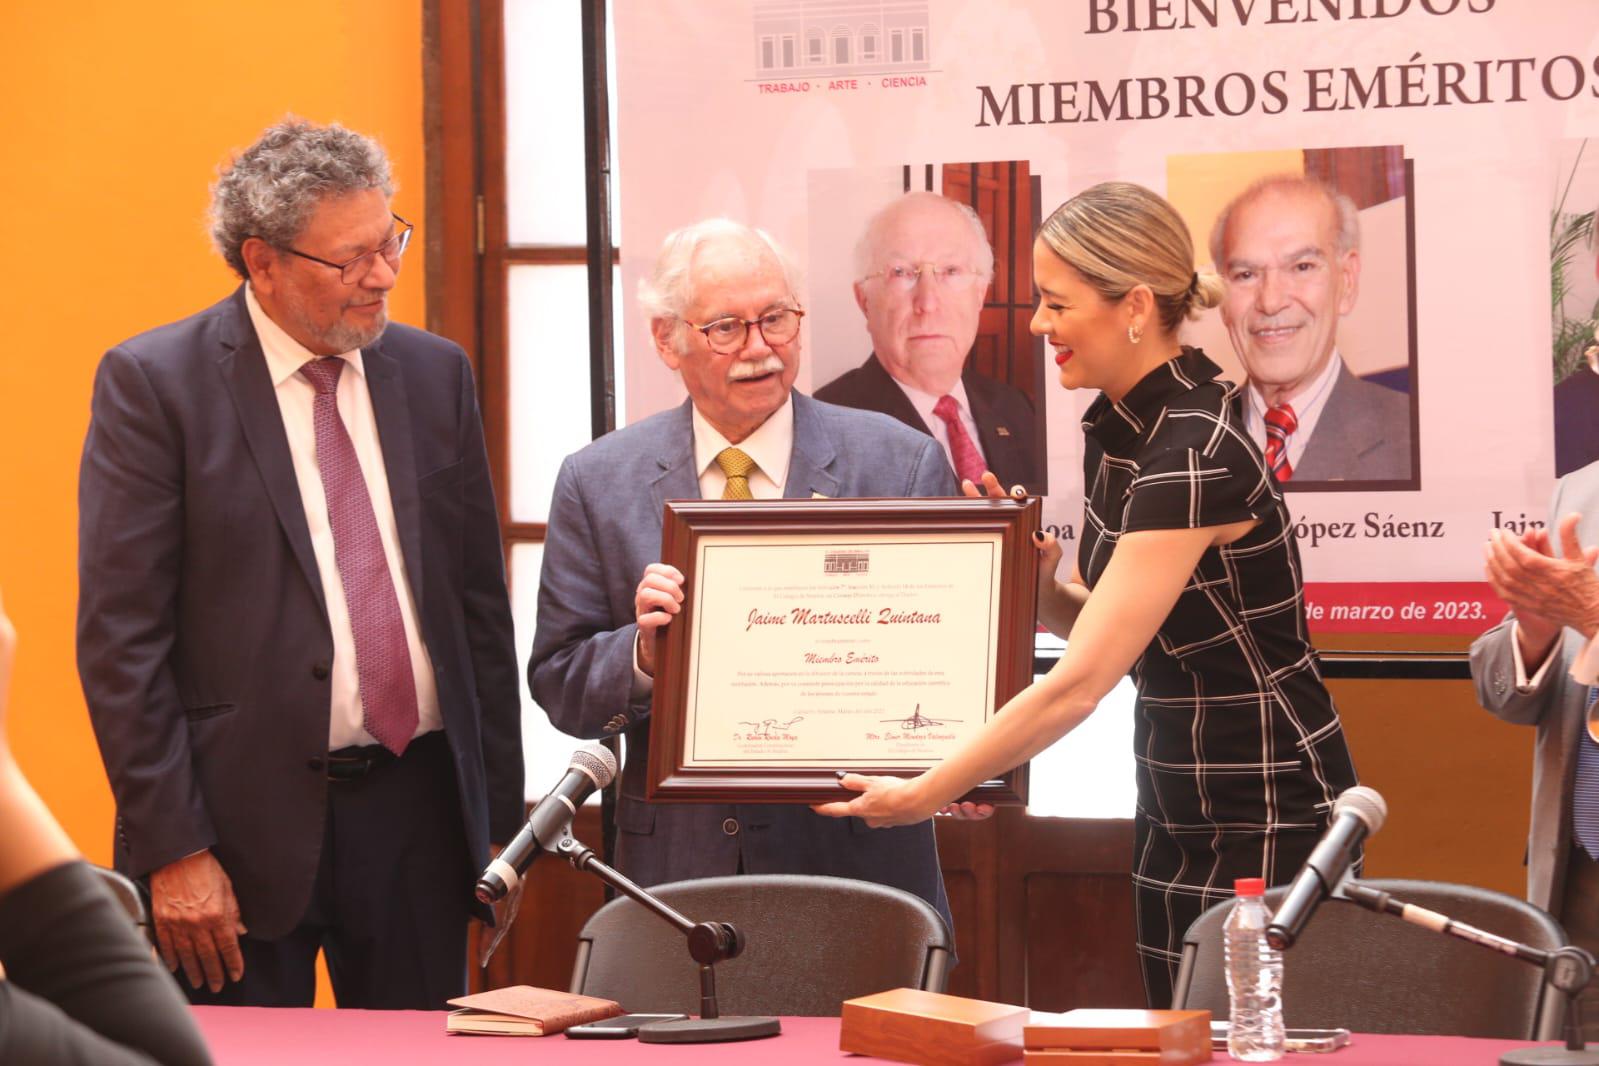 $!Reconocen como miembros eméritos a Labastida, López Sáenz y Martuscelli